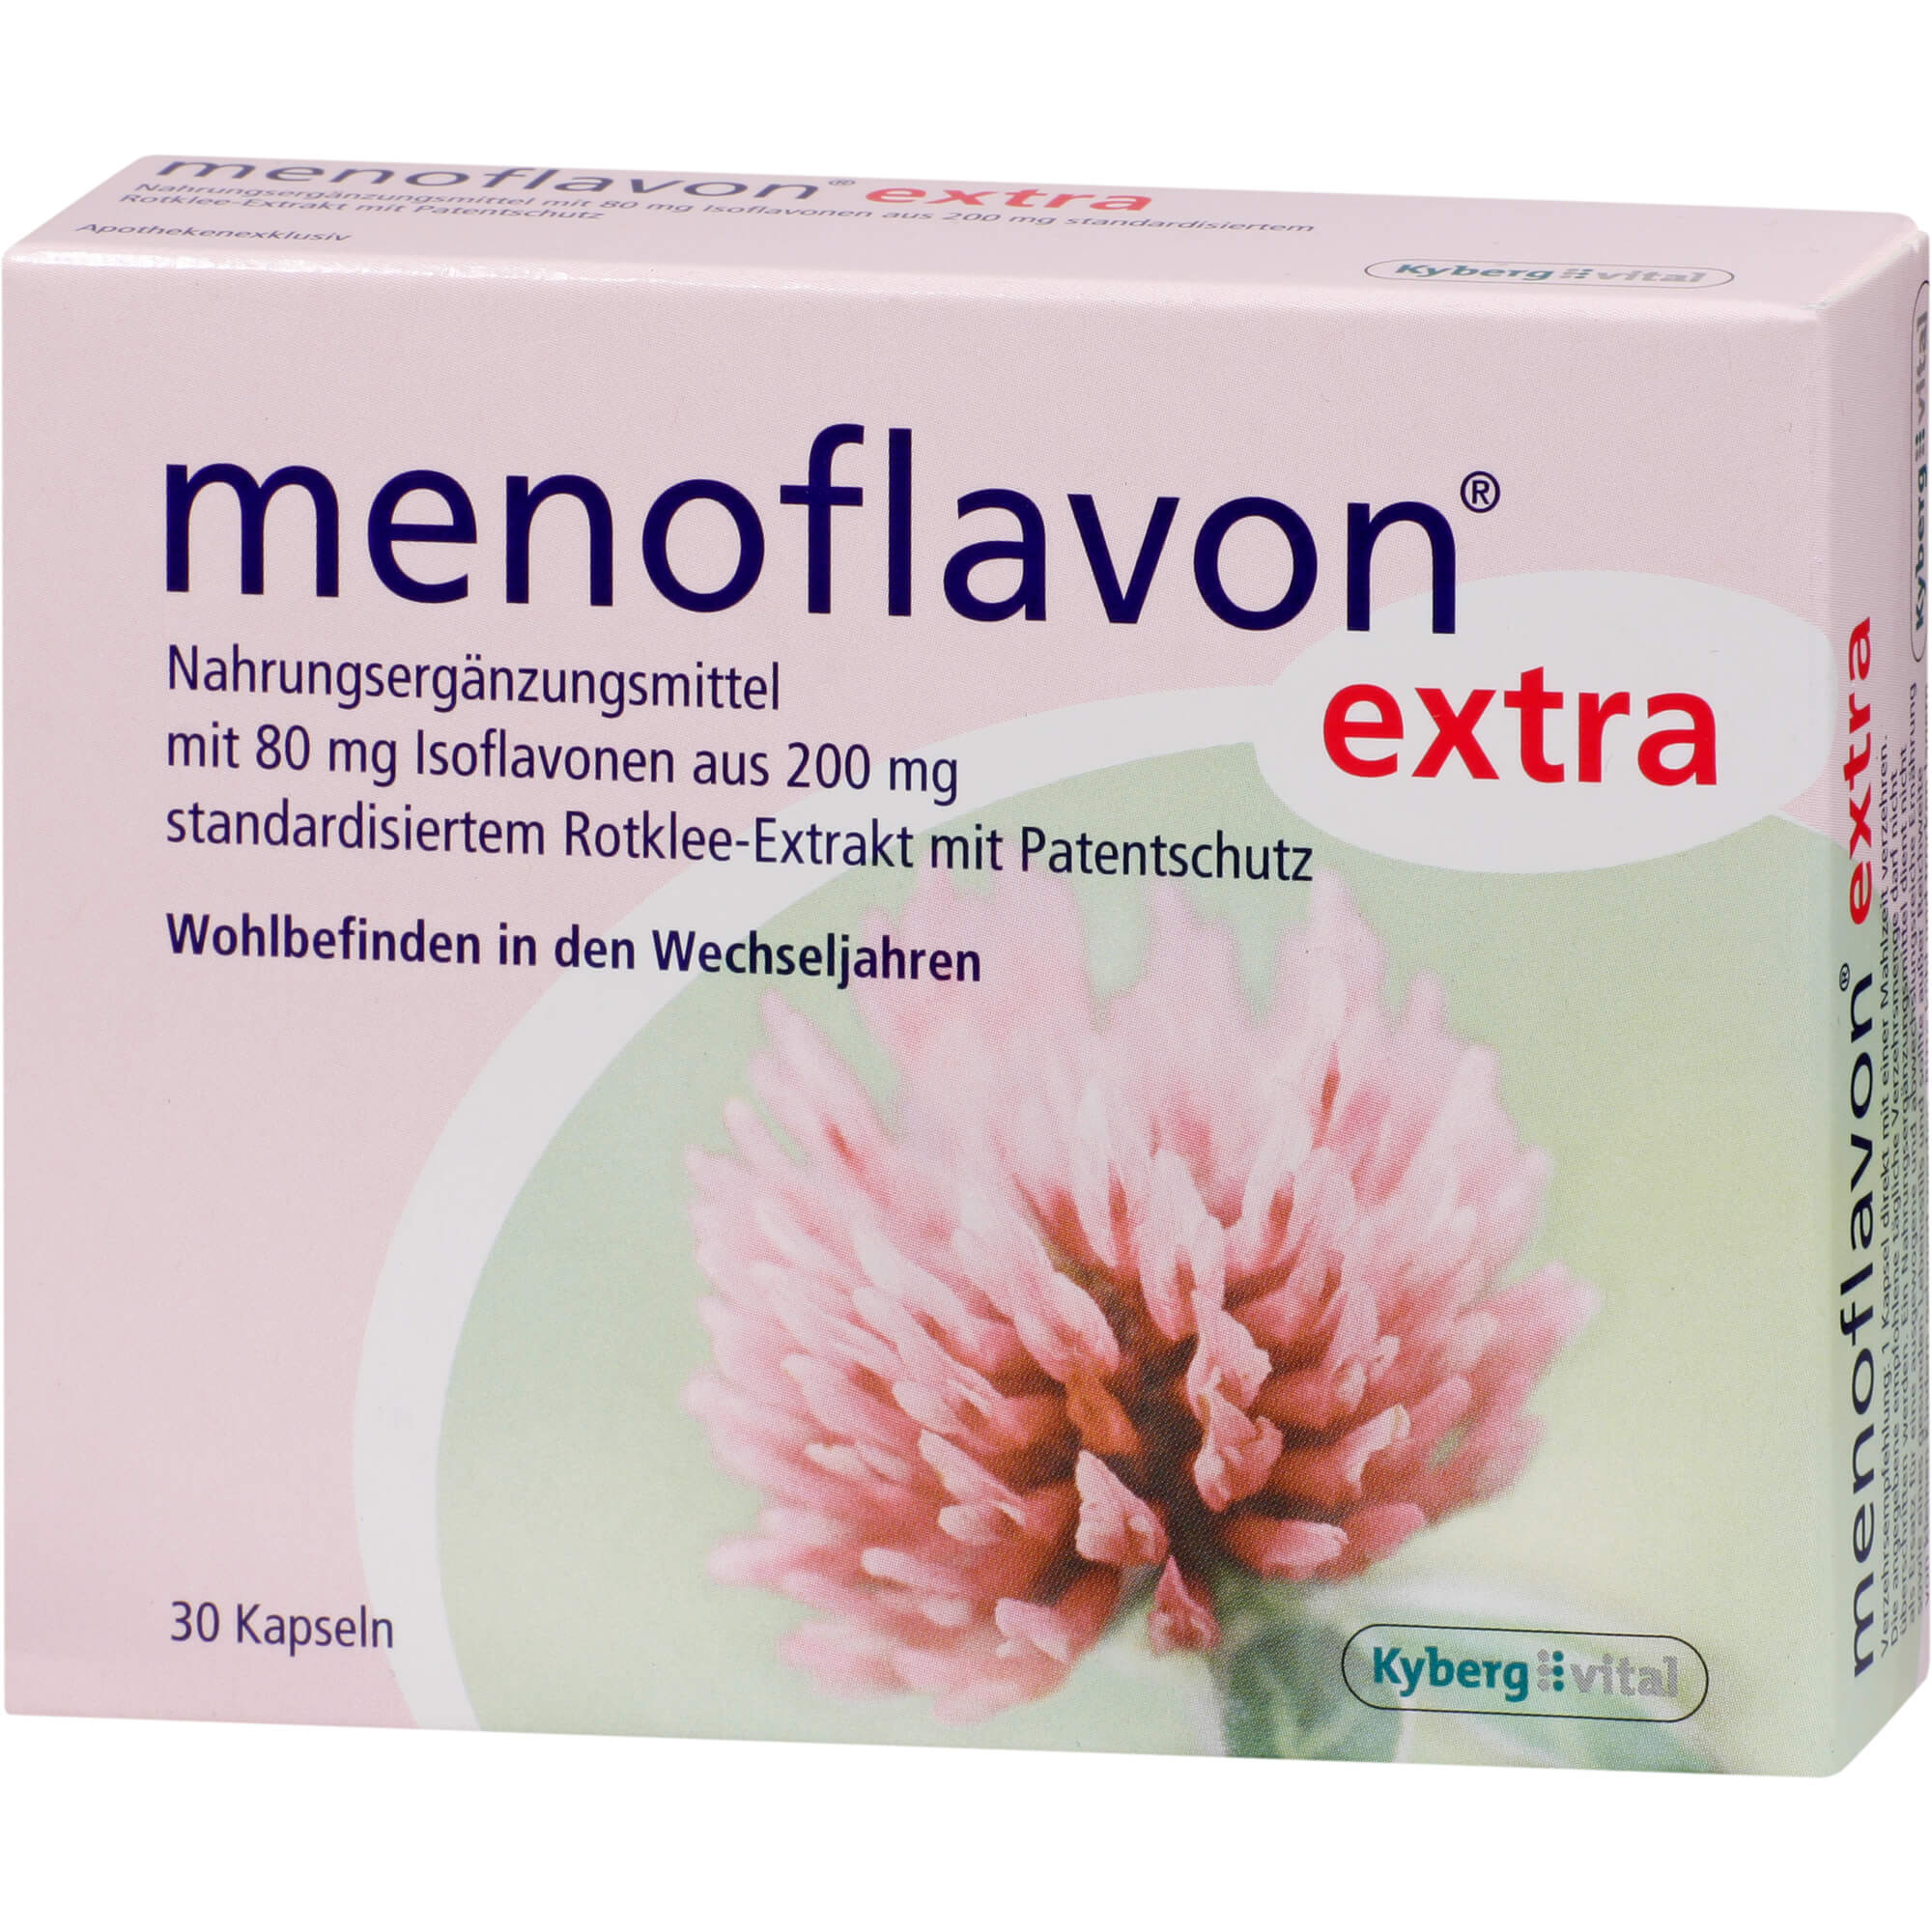 Nahrungsergänzungsmittel mit 80 mg Isoflavonen aus Rotklee-Extrakt.